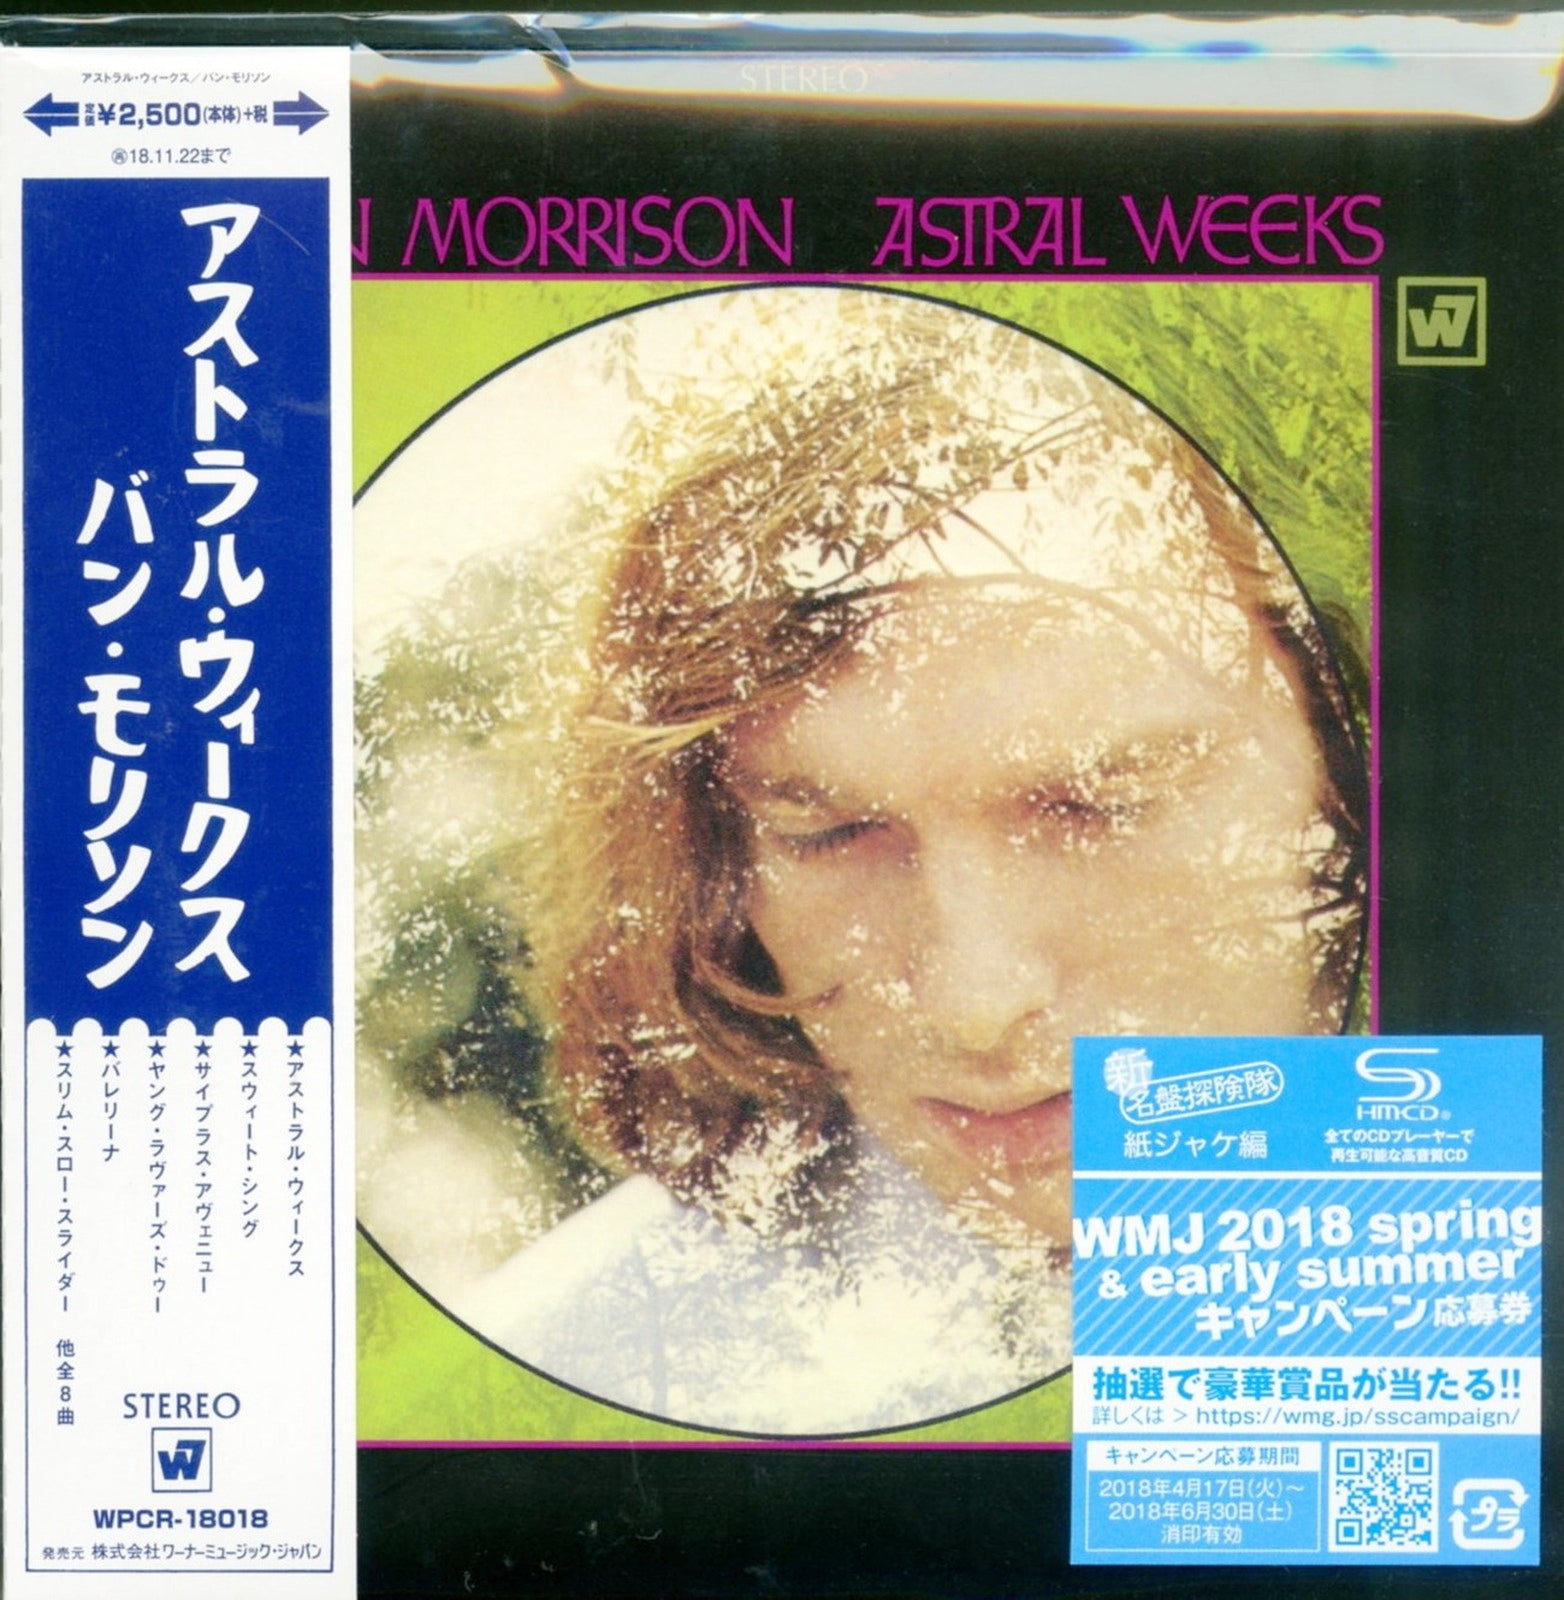 Van Morrison - Astral Weeks - Japan Mini LP SHM-CD – CDs Vinyl